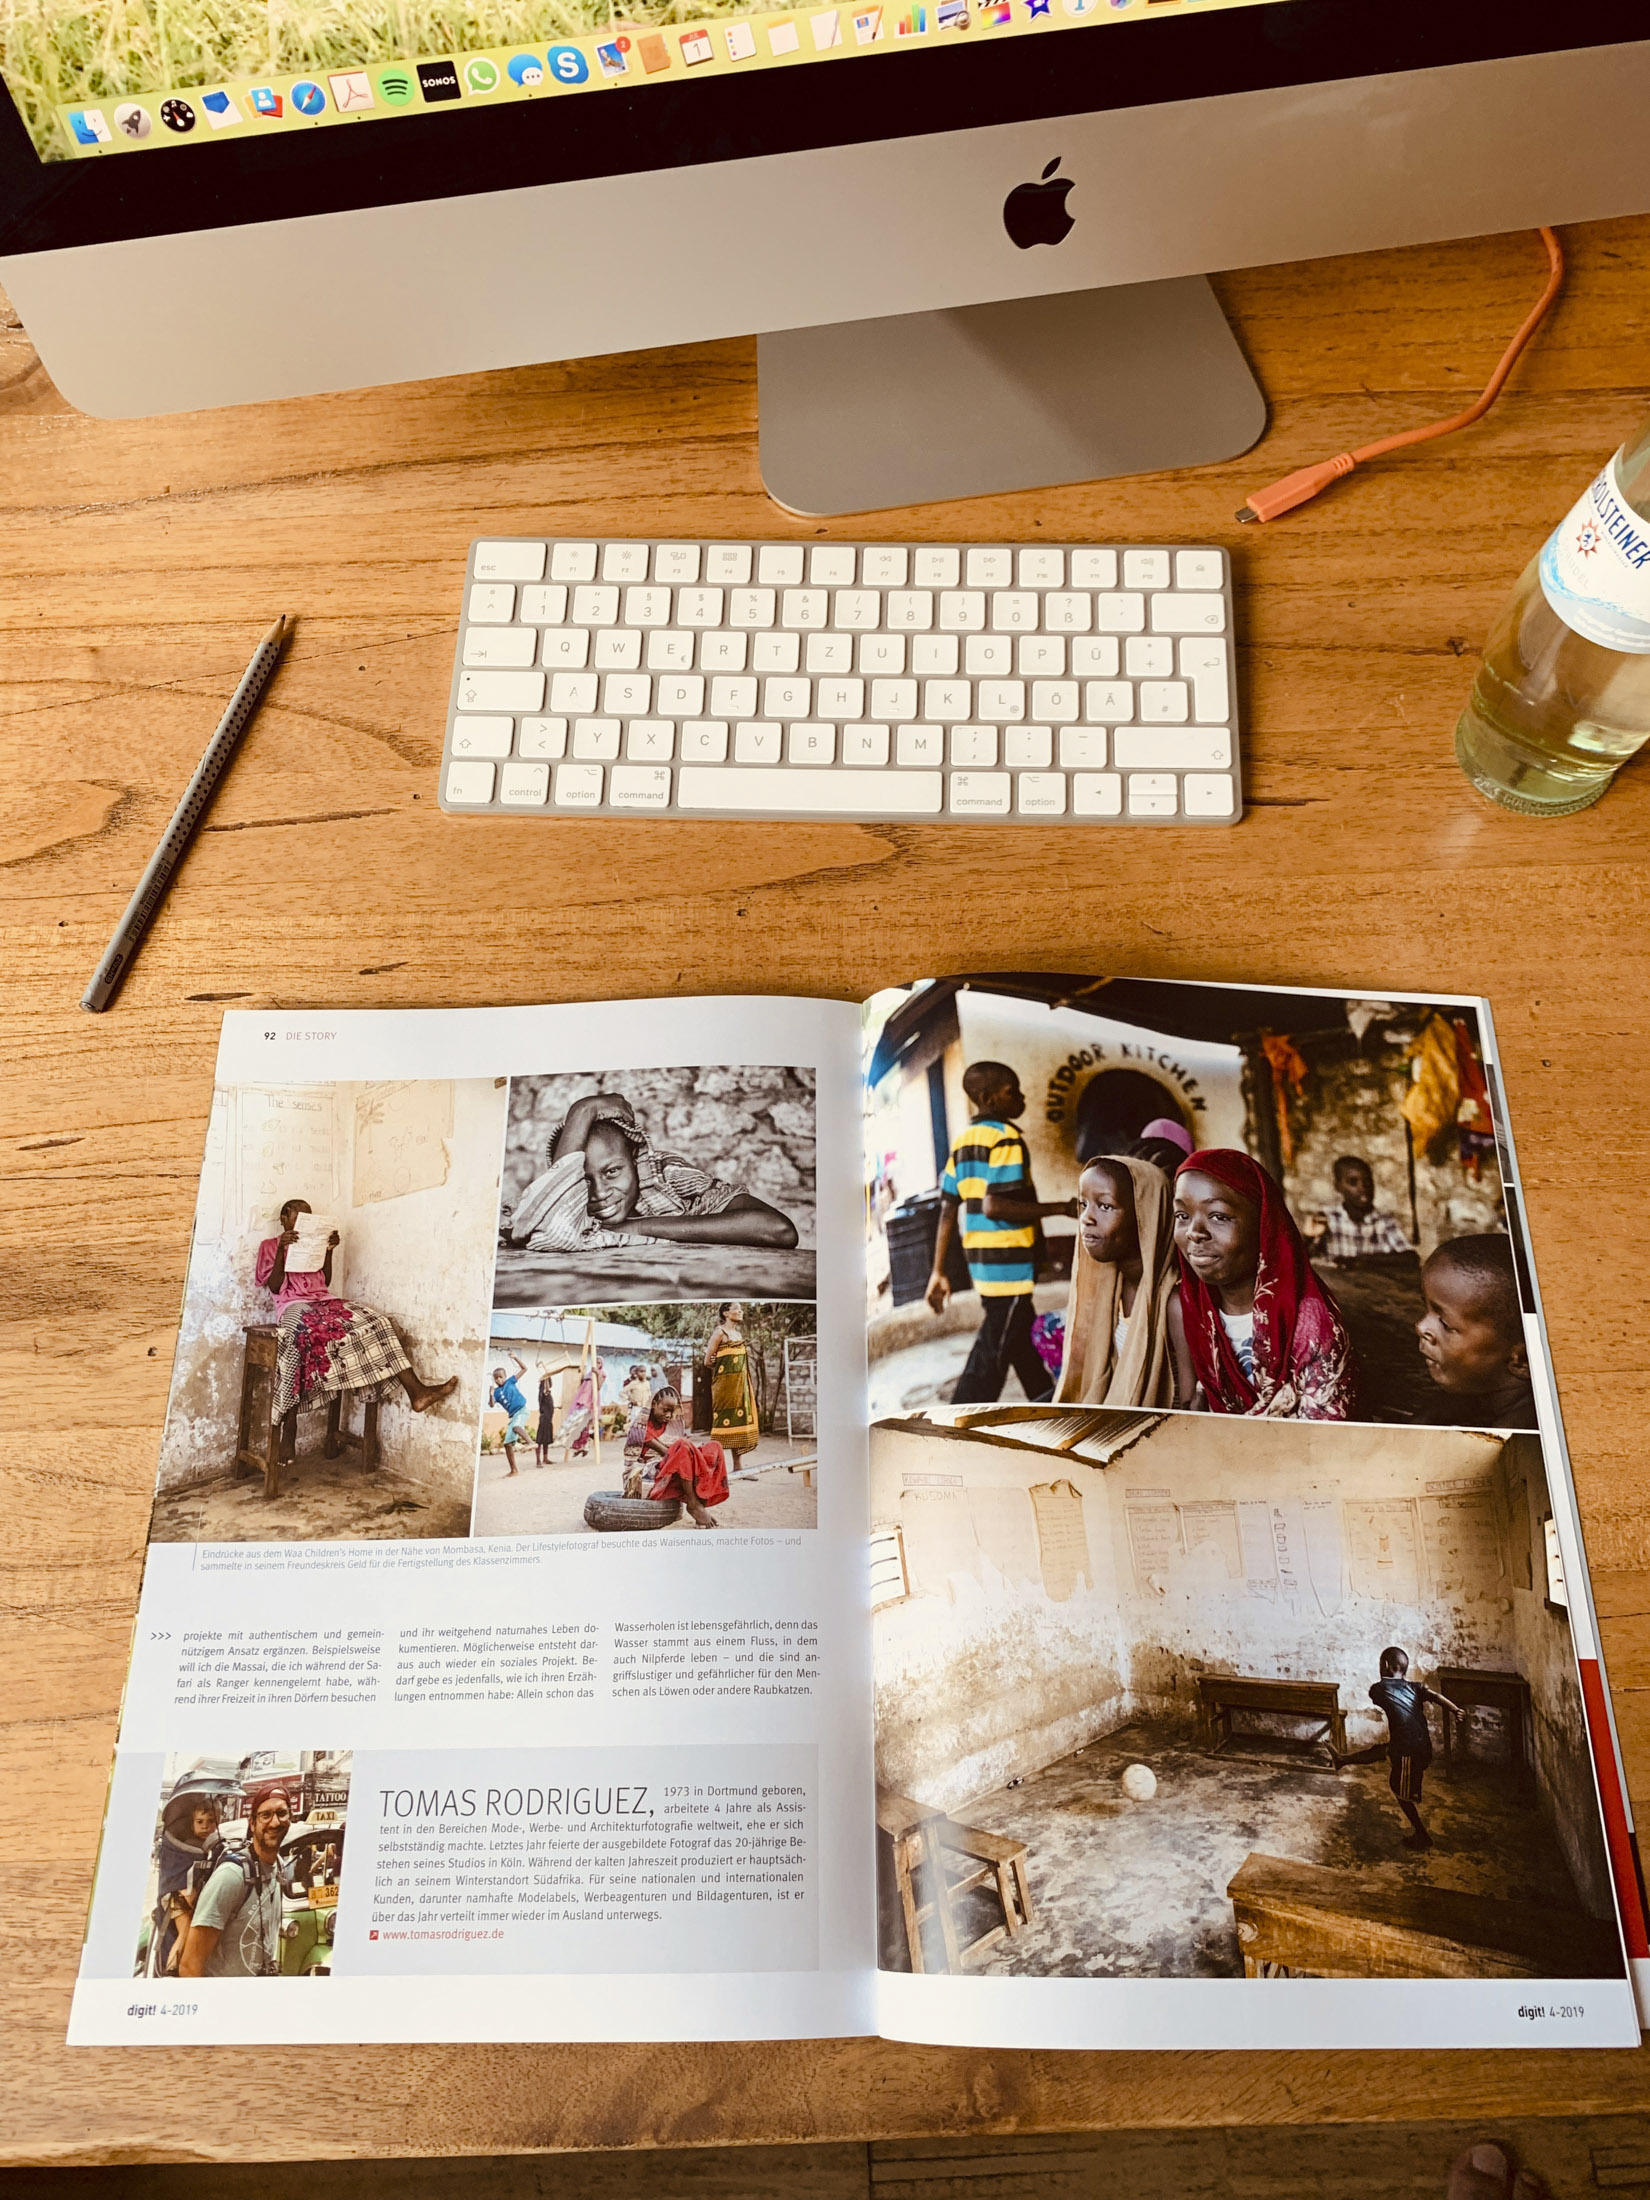 Ein Schreibtischarbeitsplatz mit einer aufgeschlagenen Zeitschrift mit fotojournalistischen Bildern auf einem Holztisch und einem Apple-Computer im Hintergrund. © Fotografie Tomas Rodriguez